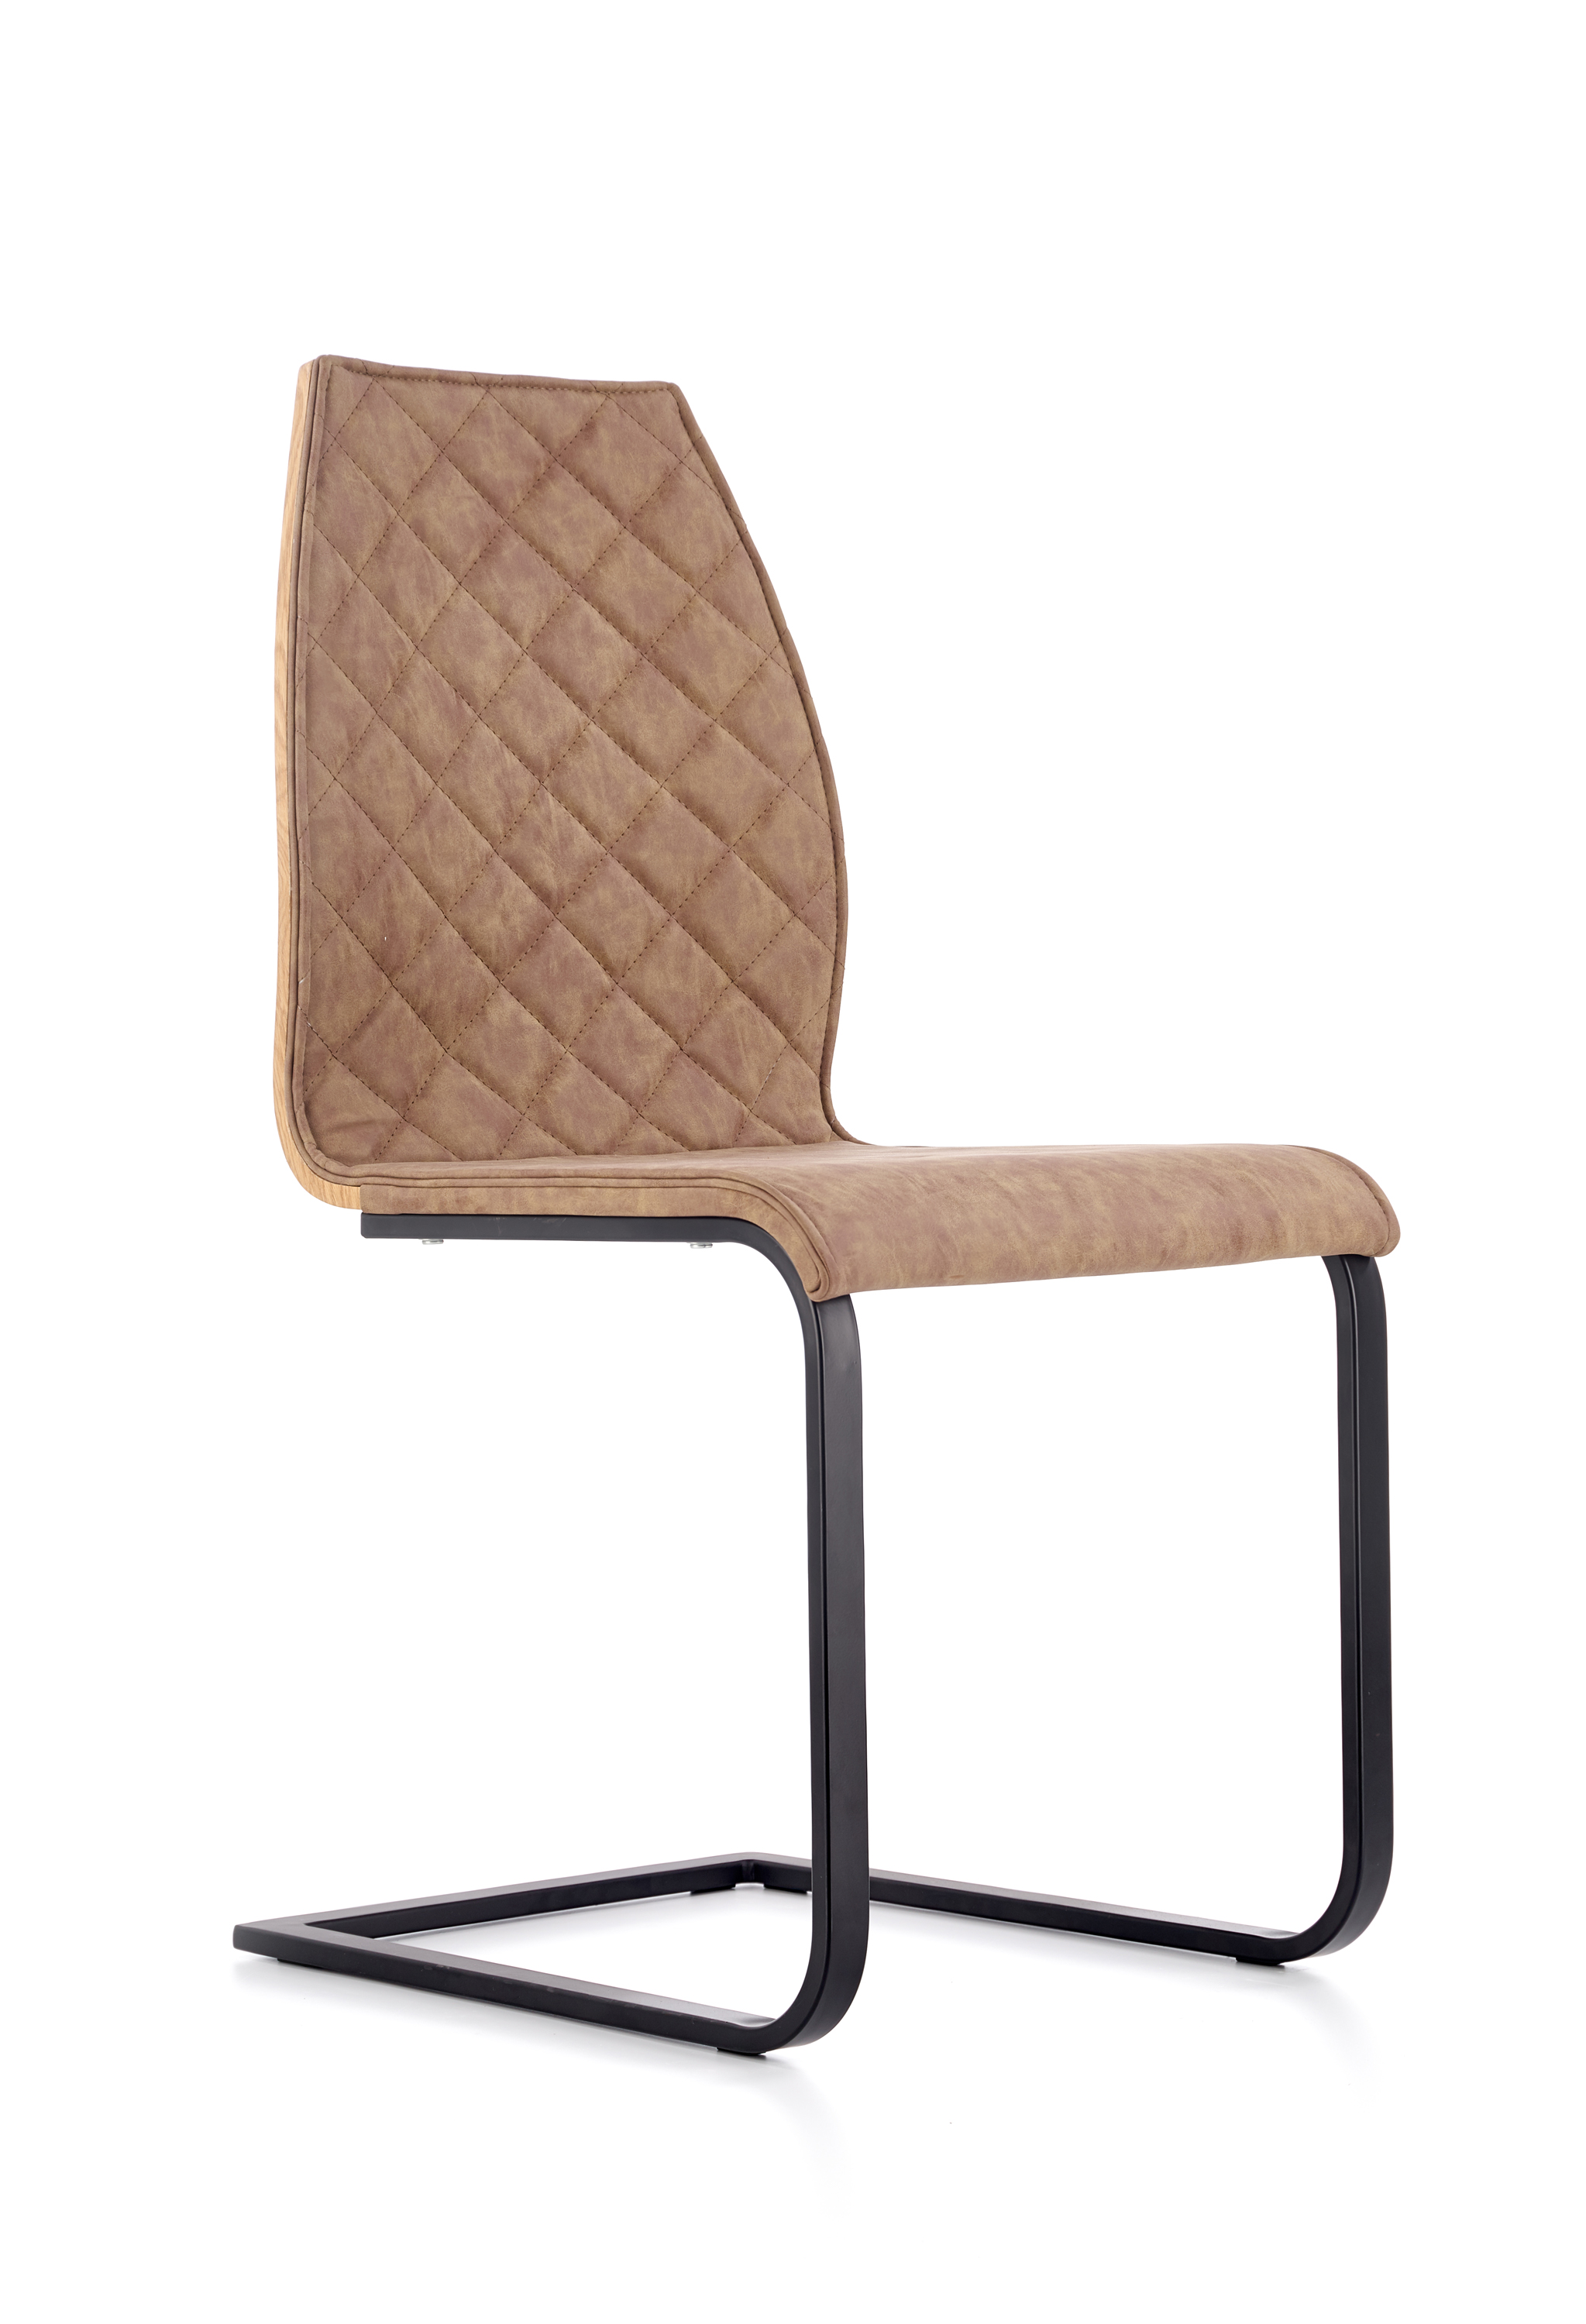 K265 kárpitozott szék - fekete / barna / mézes tölgyfa Židle čalouněná k265 - Fekete / barna / Dub medový